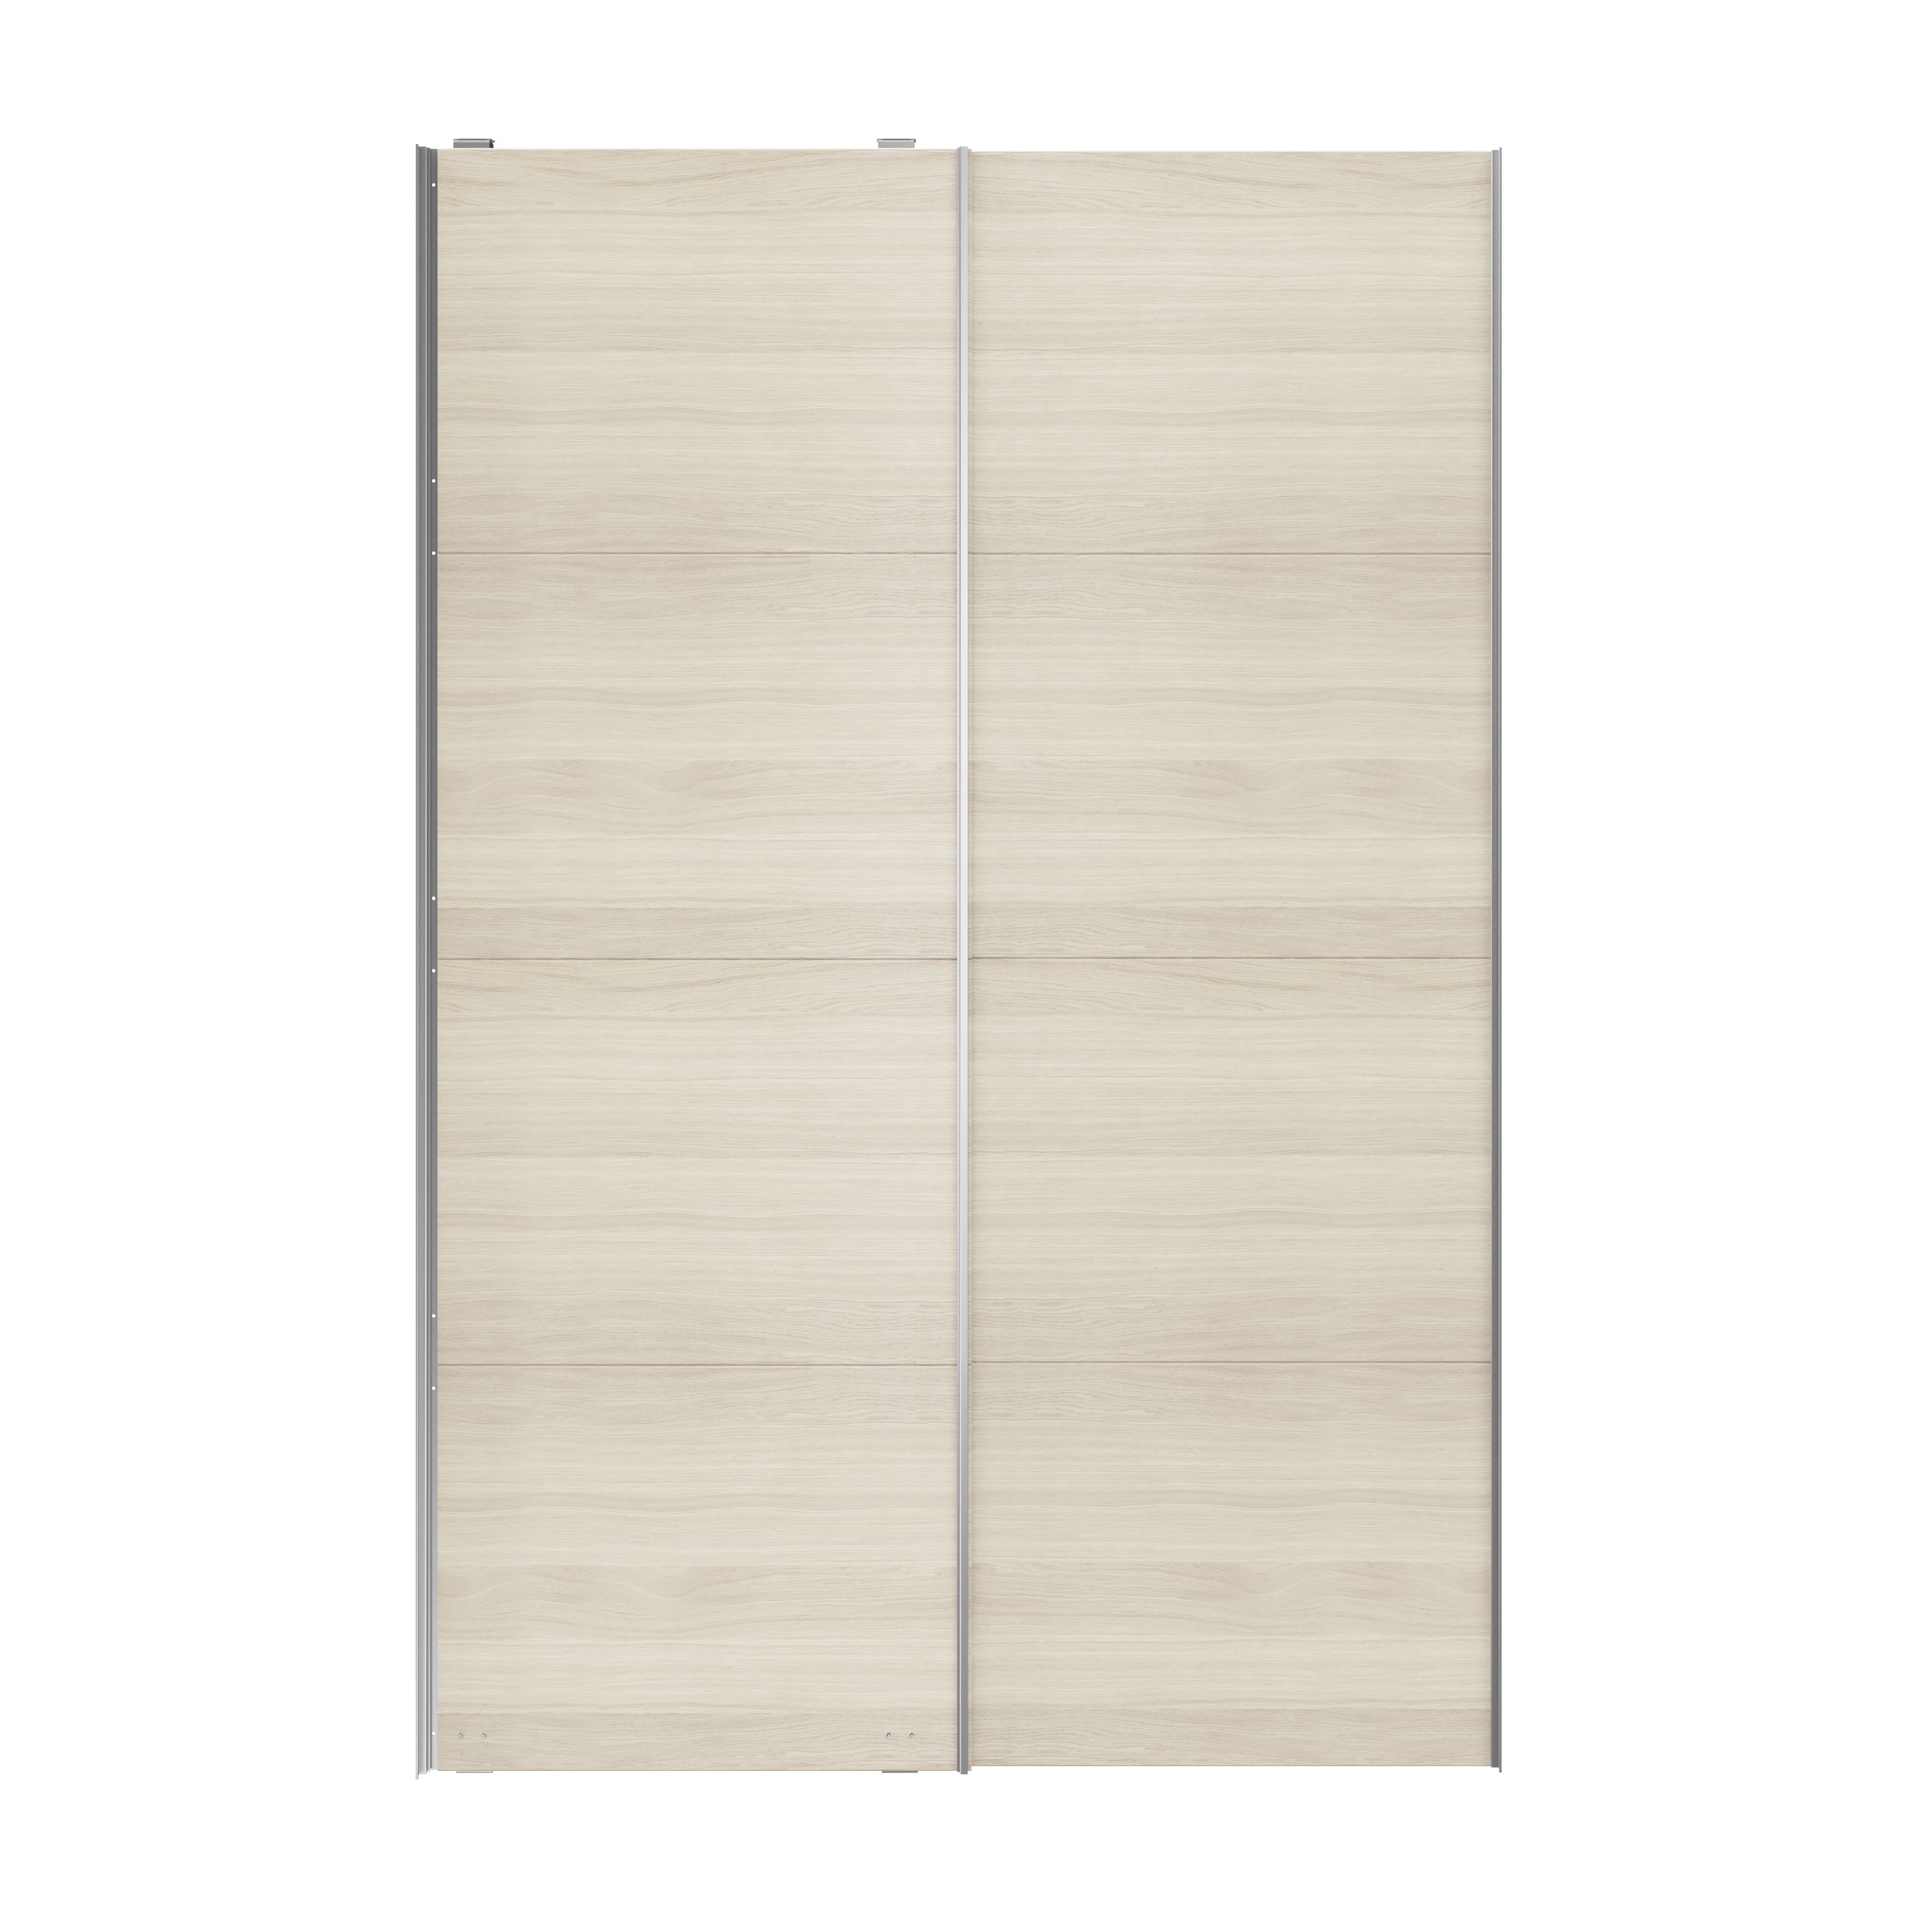 Atomia Panelled Oak effect 2 door Sliding Wardrobe Door kit (H)2250mm (W)1500mm